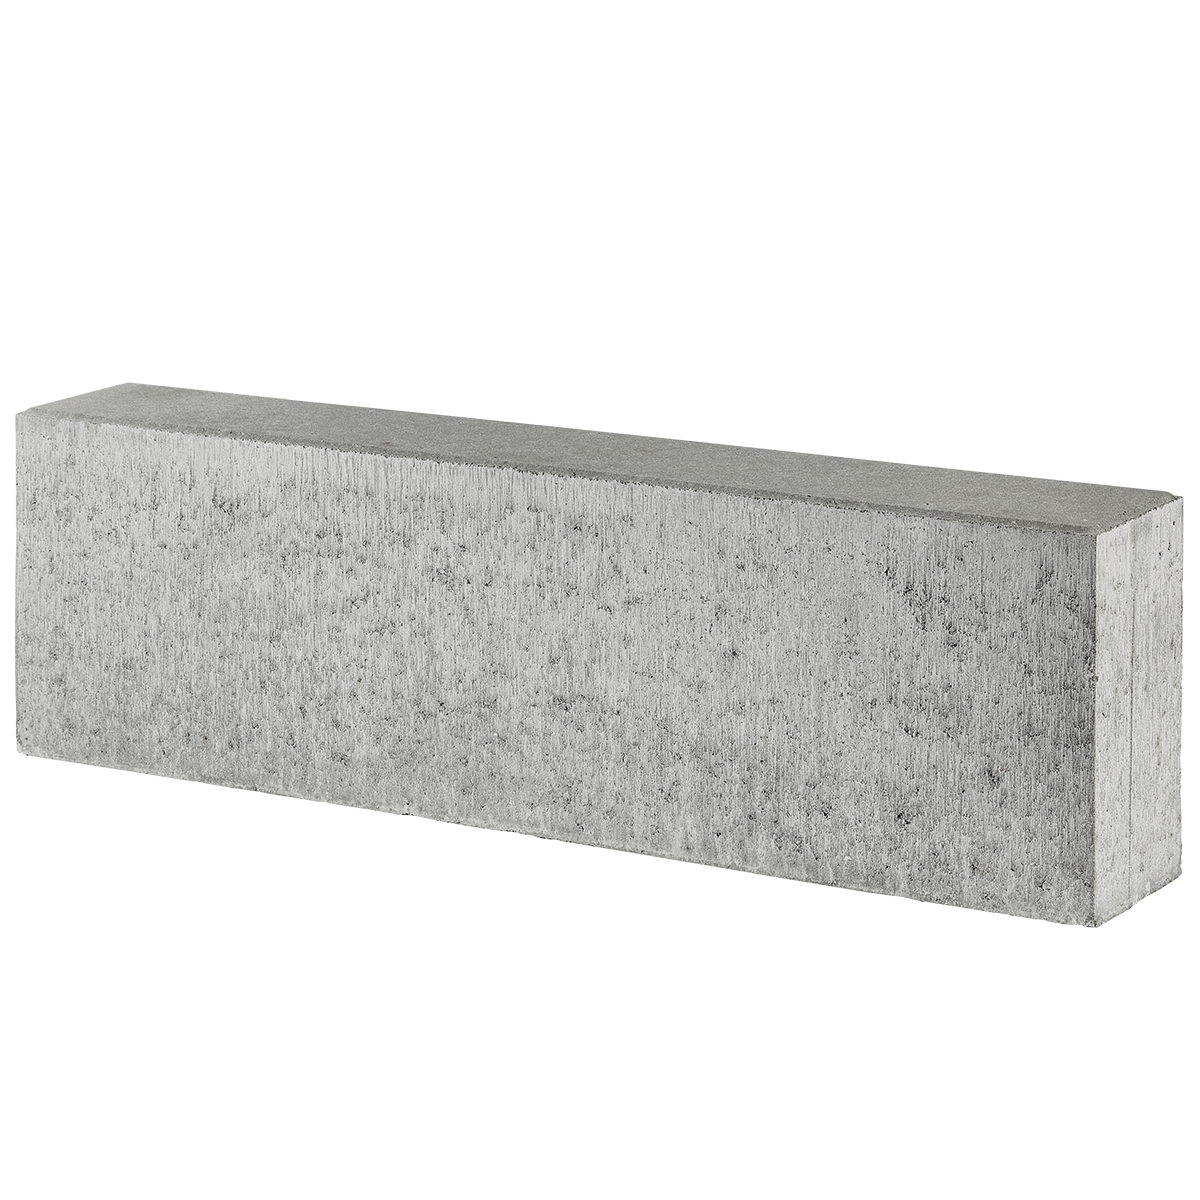 Albertslund-tiefbordrandsteine 15x30x100 cm Grau